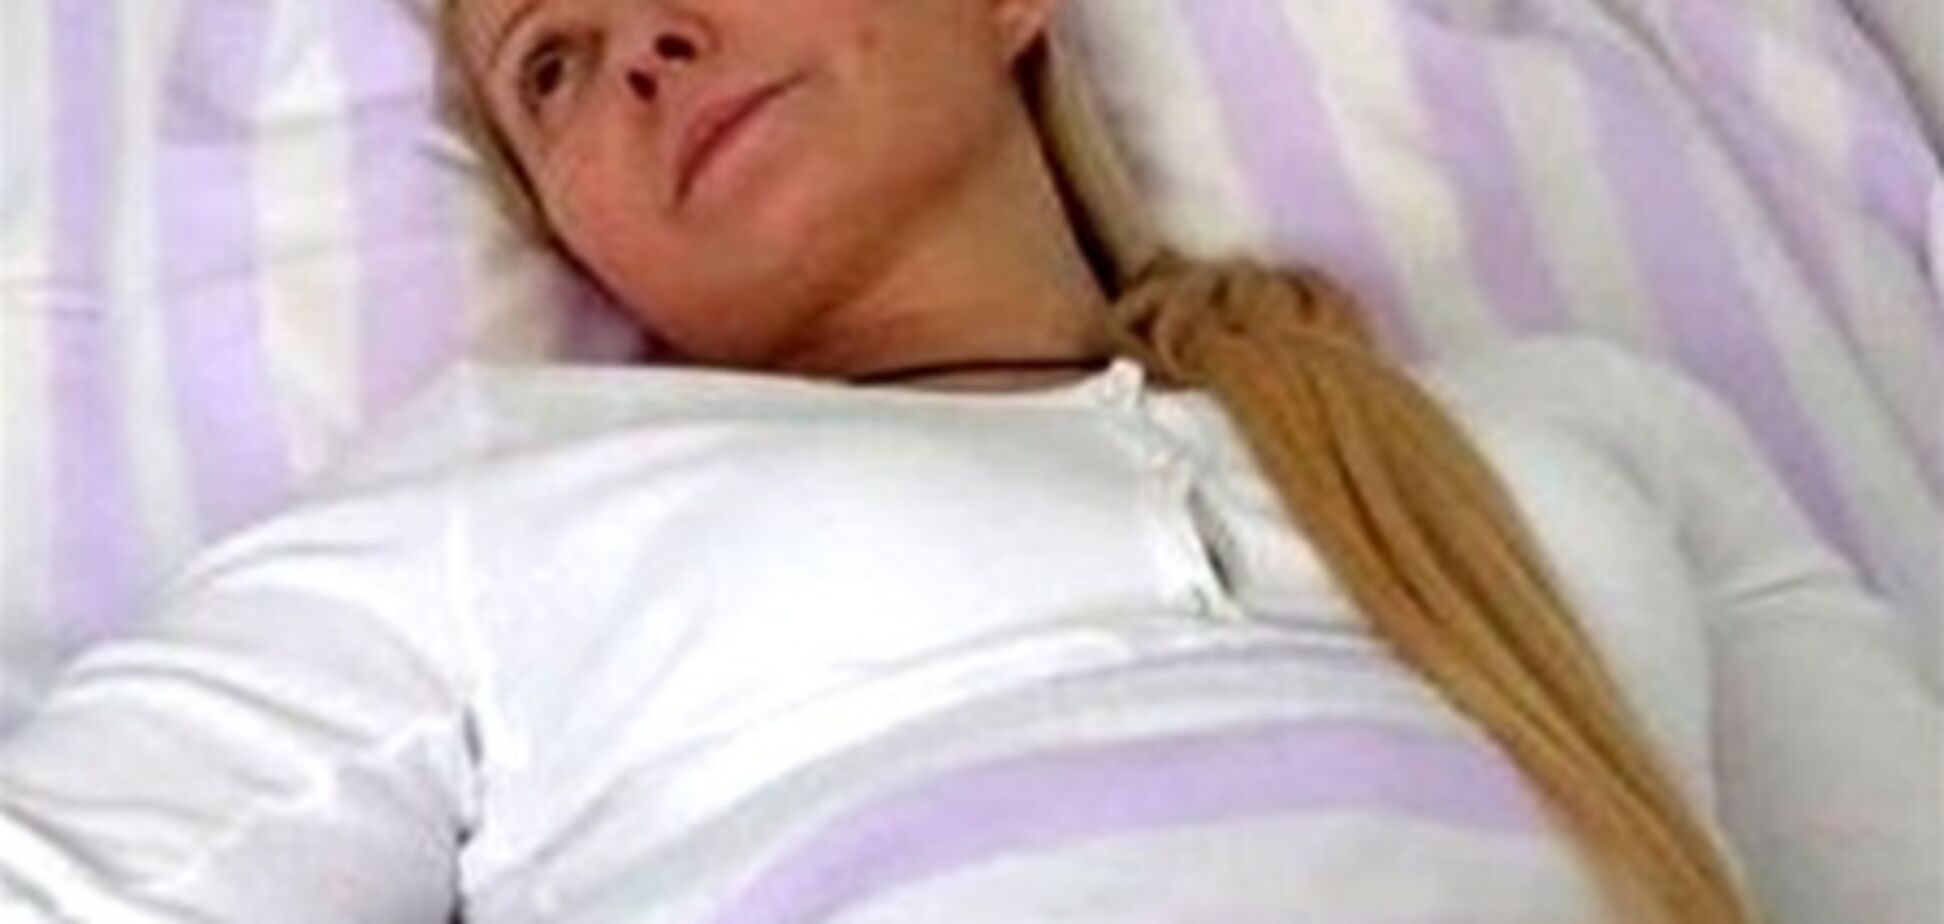 Тимошенко с нетерпением ждет немецких врачей 